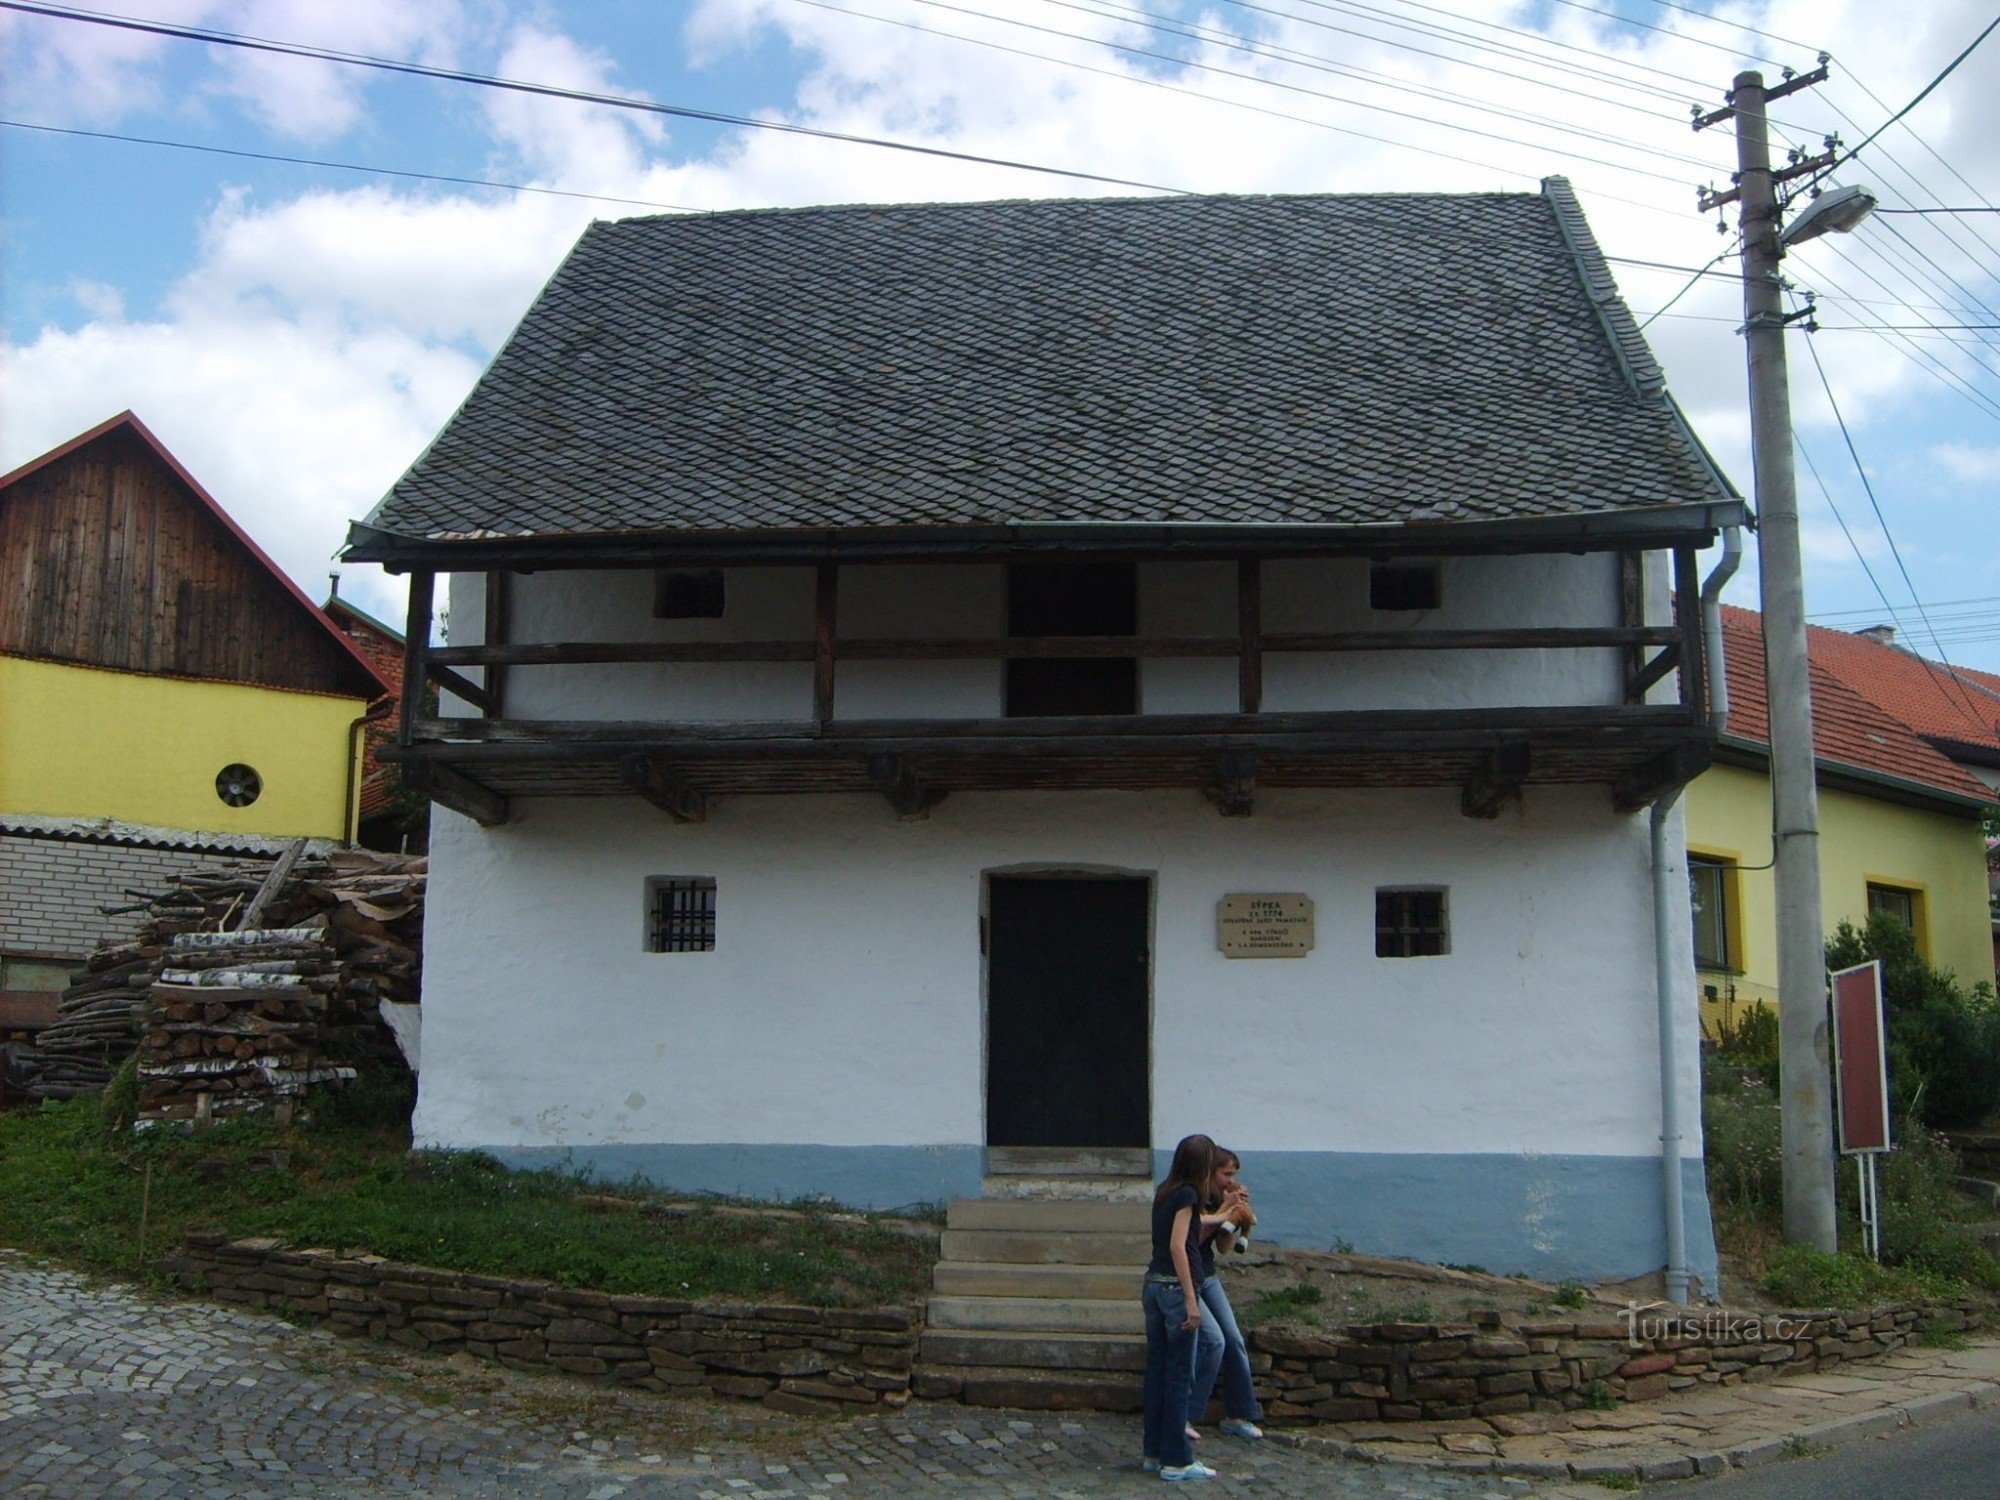 Sýpka - exposição de JA Comenius e a história da aldeia